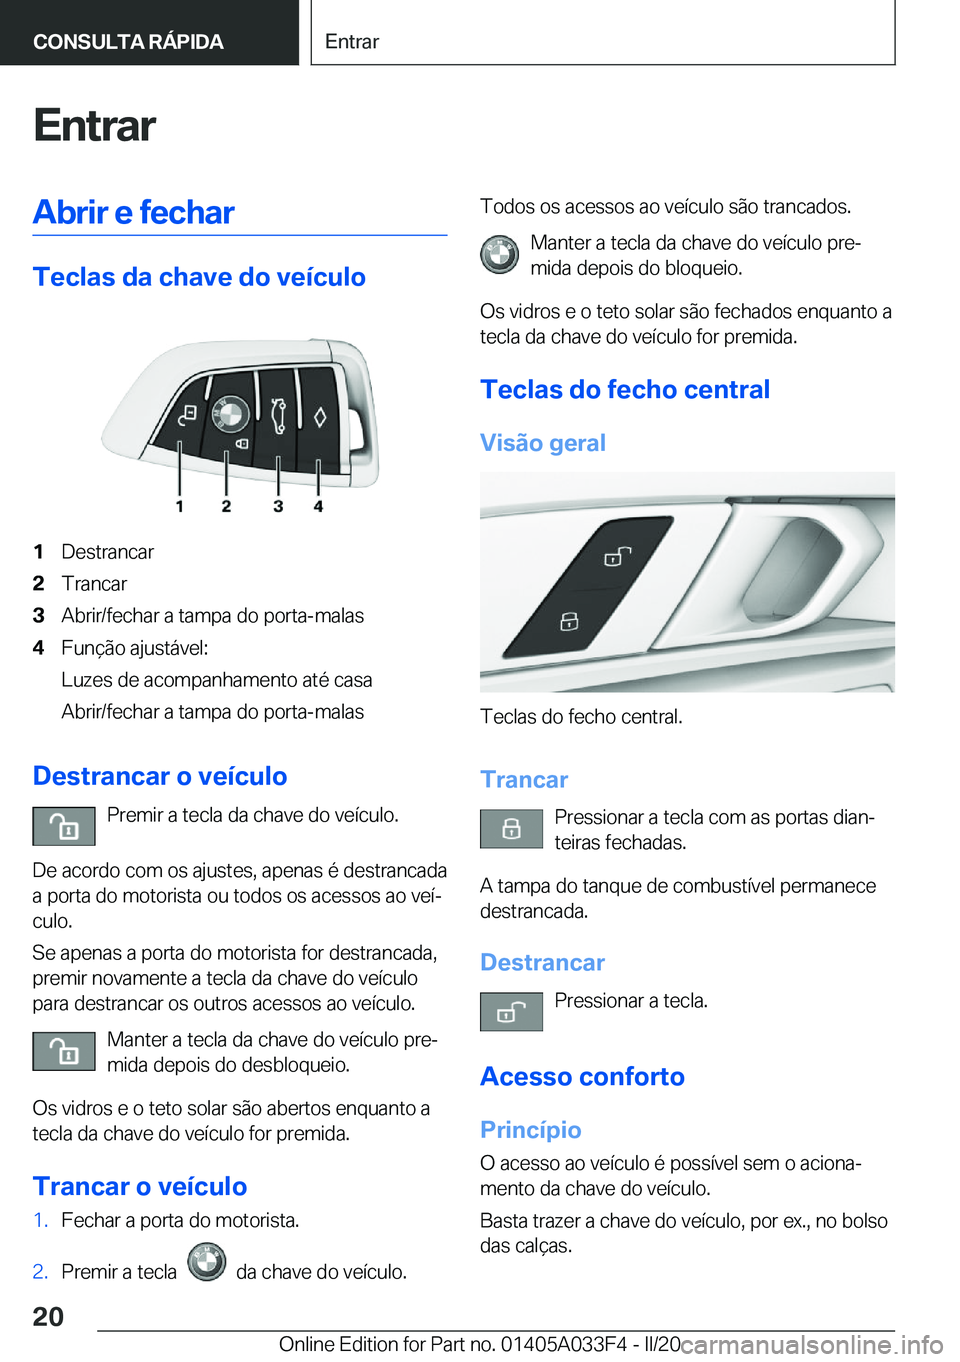 BMW X5 M 2020  Manual do condutor (in Portuguese) �E�n�t�r�a�r�A�b�r�i�r��e��f�e�c�h�a�r
�T�e�c�l�a�s��d�a��c�h�a�v�e��d�o��v�e�